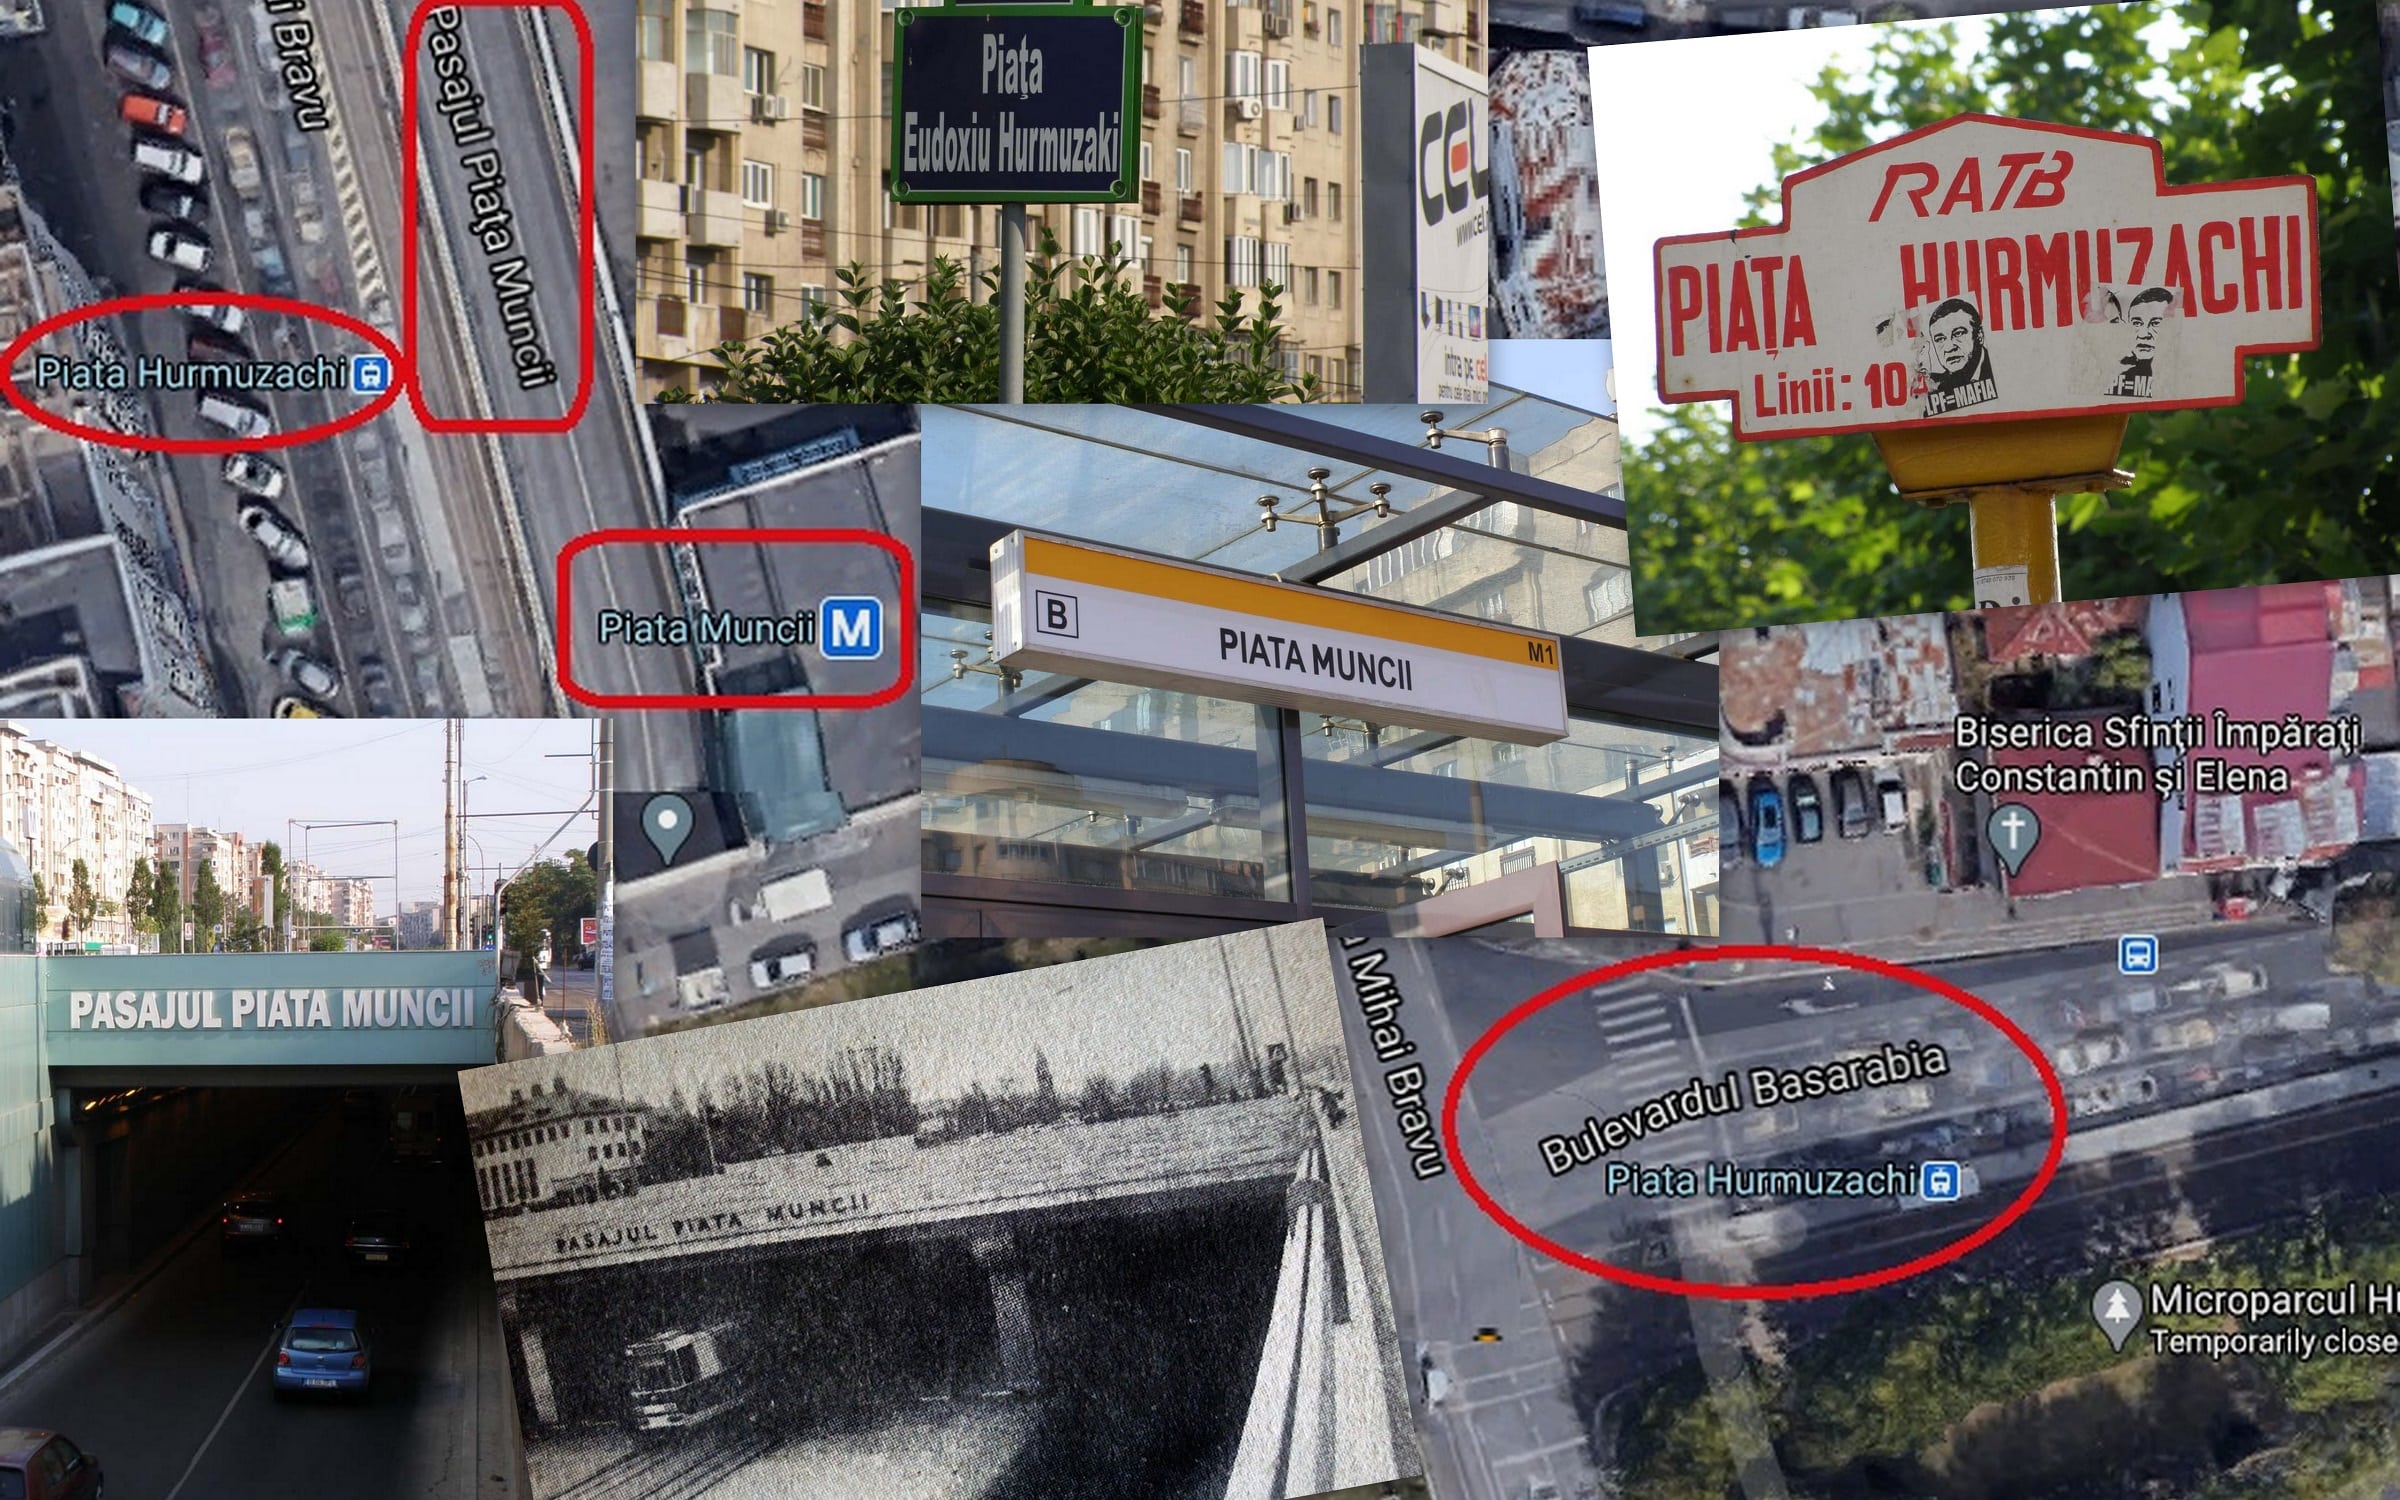 SĂ FIE PASAJUL TRIANON! Relicve ale comunismului în plin București. ActiveNews cere Primarului Nicușor Dan și conducerii Metrorex schimbarea denumirilor aberante ale Pasajului și Stației de Metrou „Piața Muncii” cu Trianon și Basarabia